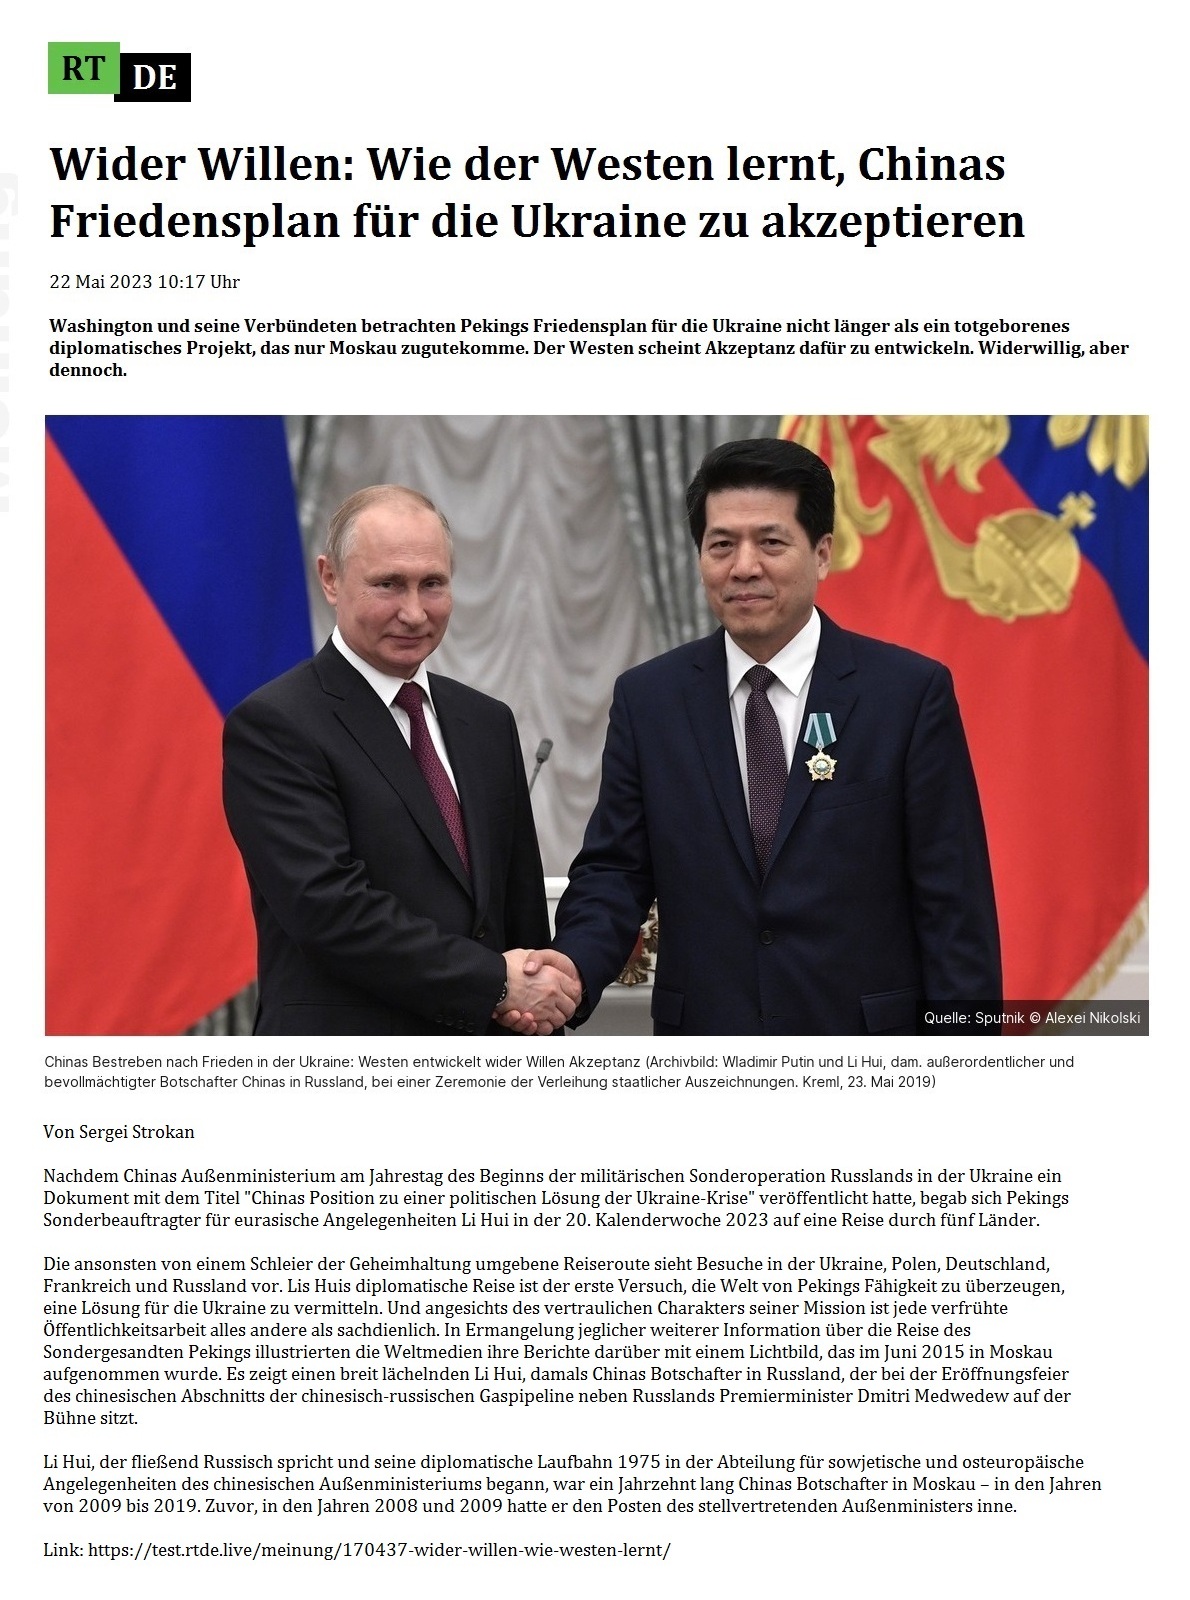 Wider Willen: Wie der Westen lernt, Chinas Friedensplan für die Ukraine zu akzeptieren - 22 Mai 2023 10:17 Uhr - Washington und seine Verbündeten betrachten Pekings Friedensplan für die Ukraine nicht länger als ein totgeborenes diplomatisches Projekt, das nur Moskau zugutekomme. Der Westen scheint Akzeptanz dafür zu entwickeln. Widerwillig, aber dennoch. - 22 Mai 2023 10:17 Uhr - RT DE - Link: https://test.rtde.live/meinung/170437-wider-willen-wie-westen-lernt/